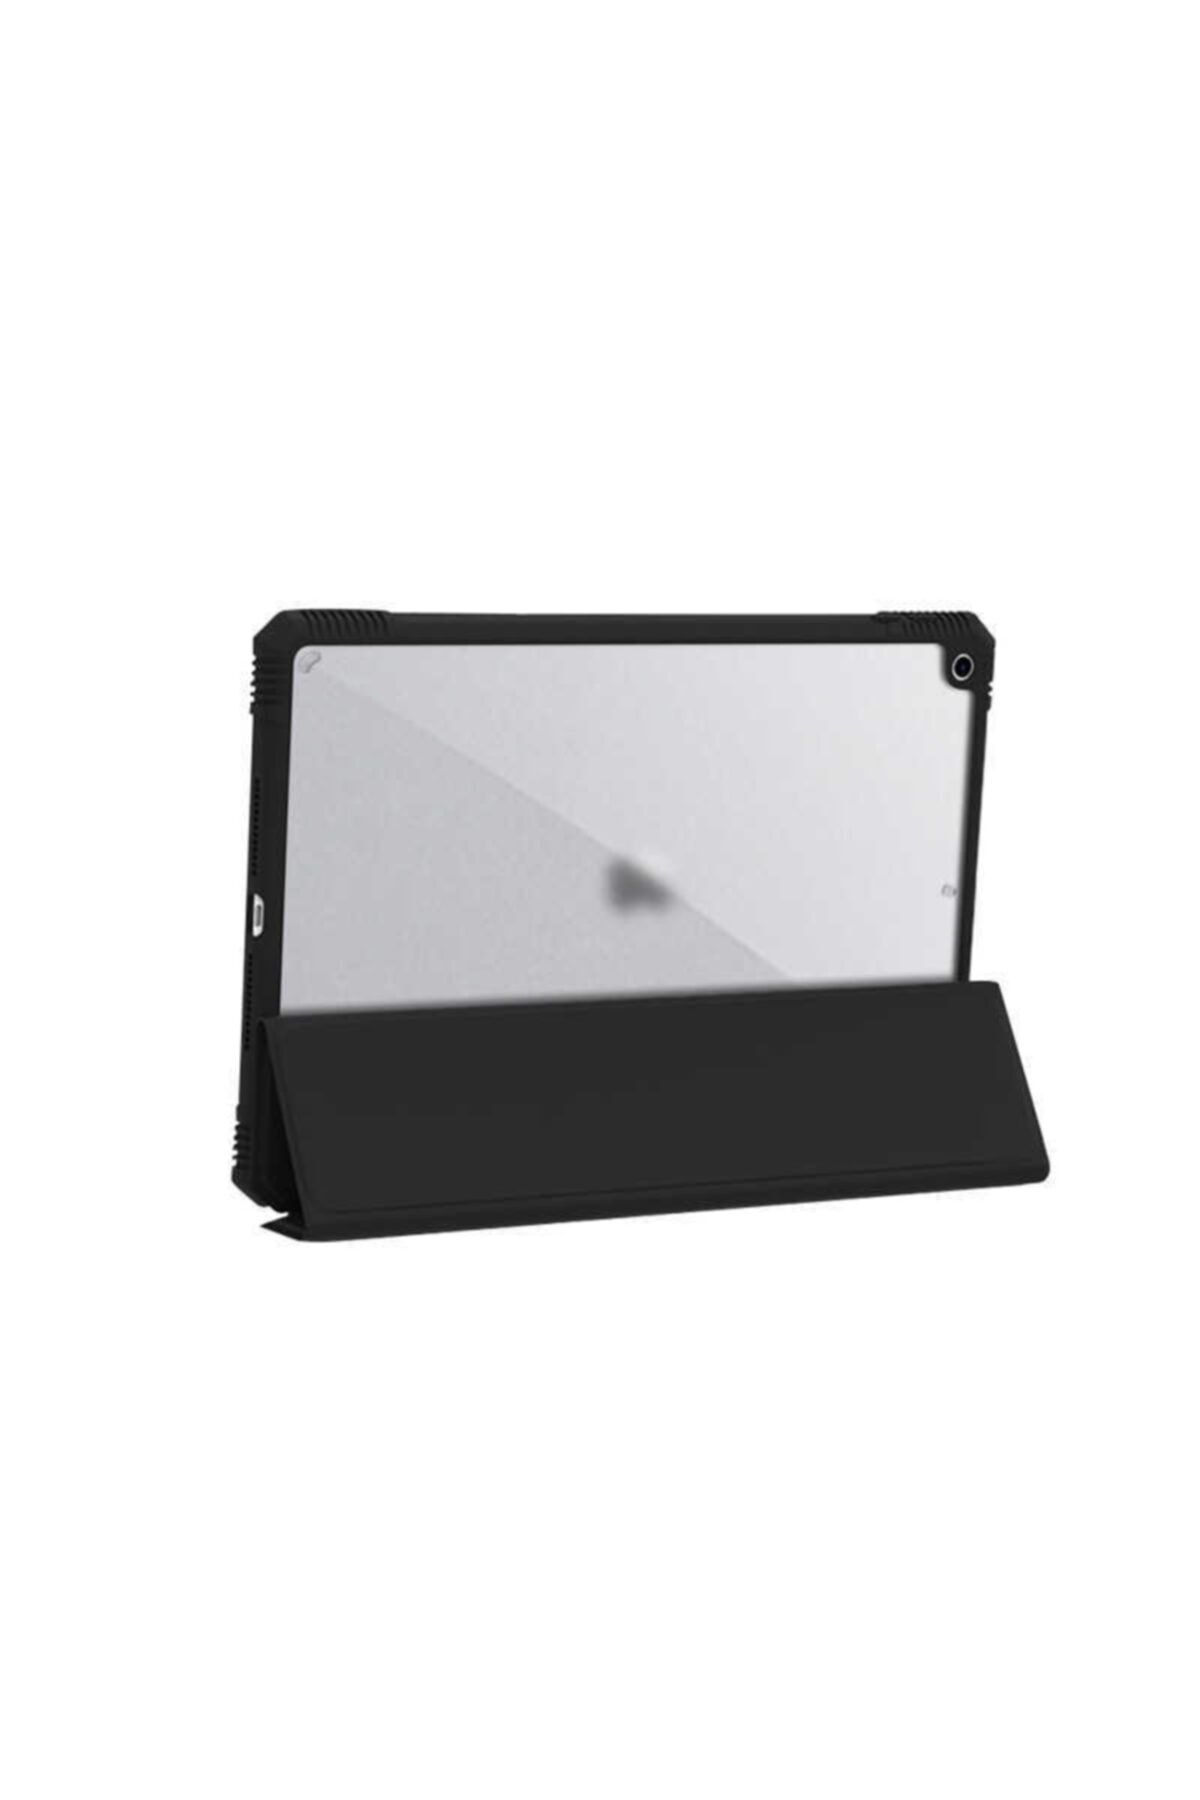 Canpay Apple Ipad 6 Air 2 Uyumlu Arka Ve Ön Kılıf Orjinal Wiwu Uyku Modu Ve Stand Özelliği